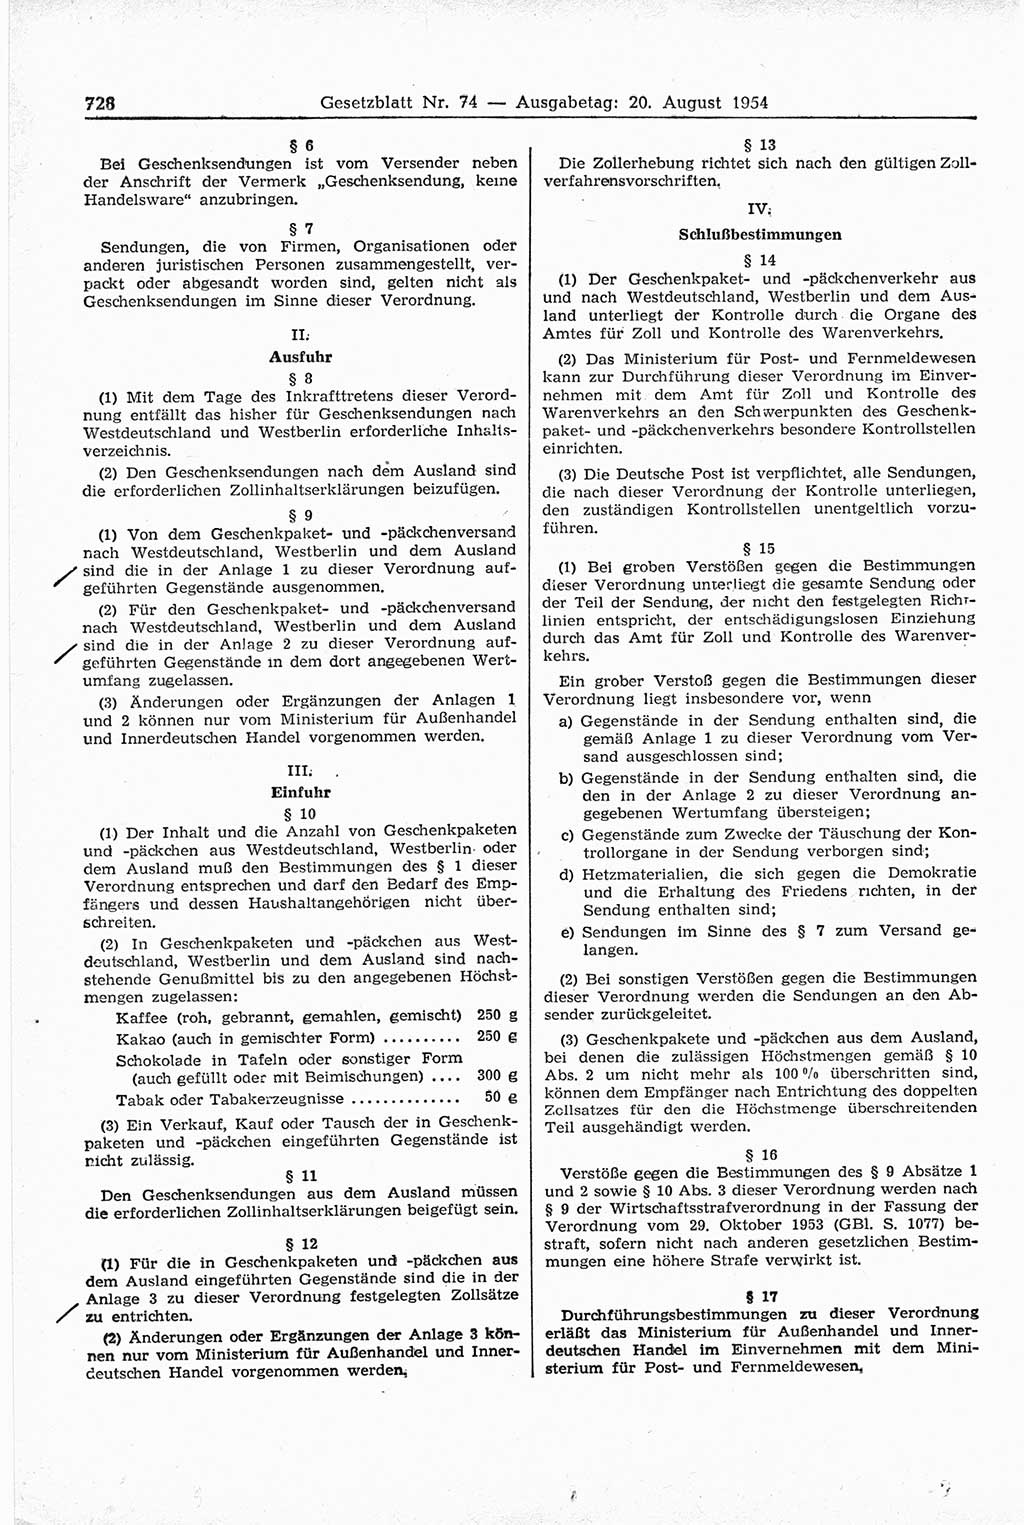 Gesetzblatt (GBl.) der Deutschen Demokratischen Republik (DDR) 1954, Seite 728 (GBl. DDR 1954, S. 728)